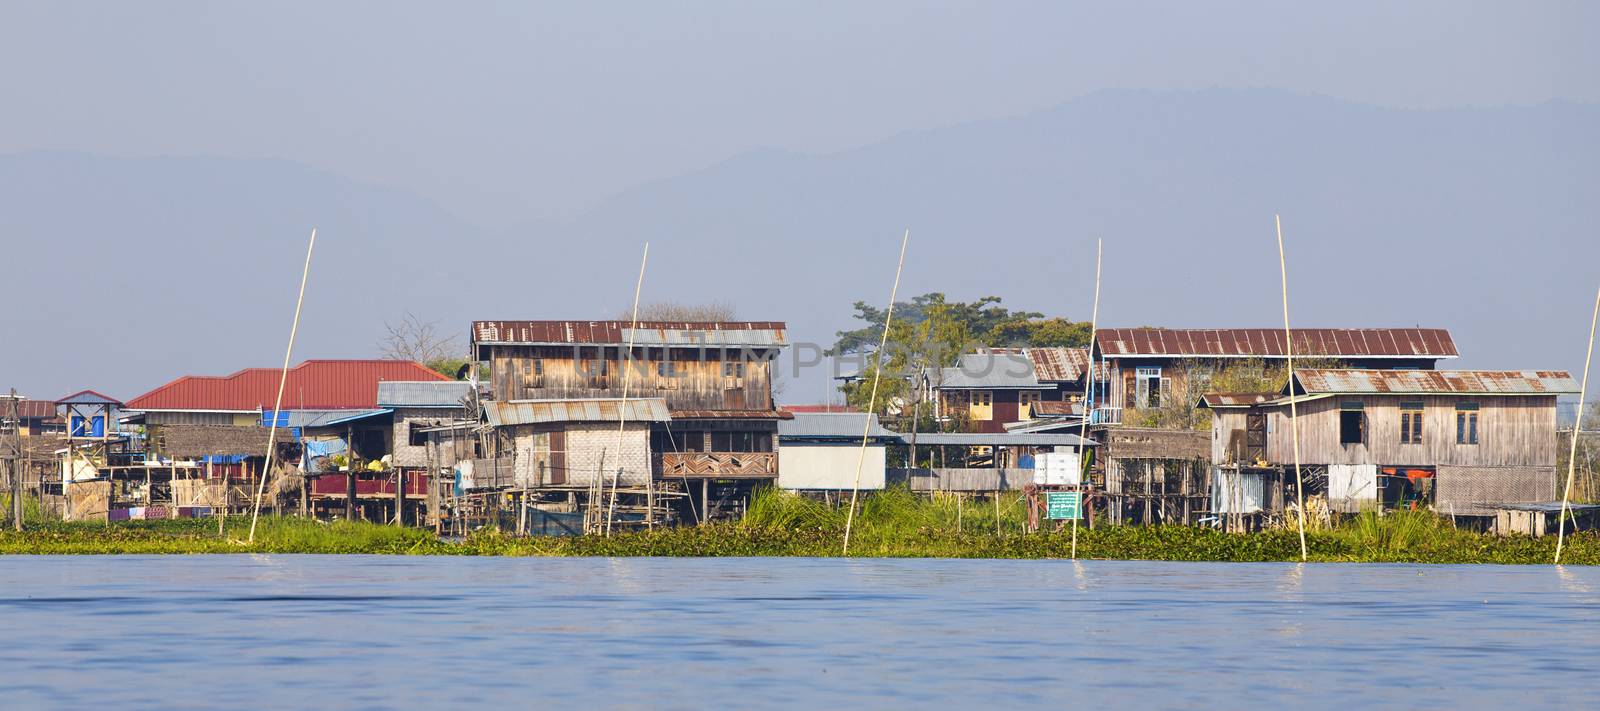 Traditional floating village at Inle Lake, Myanmar.